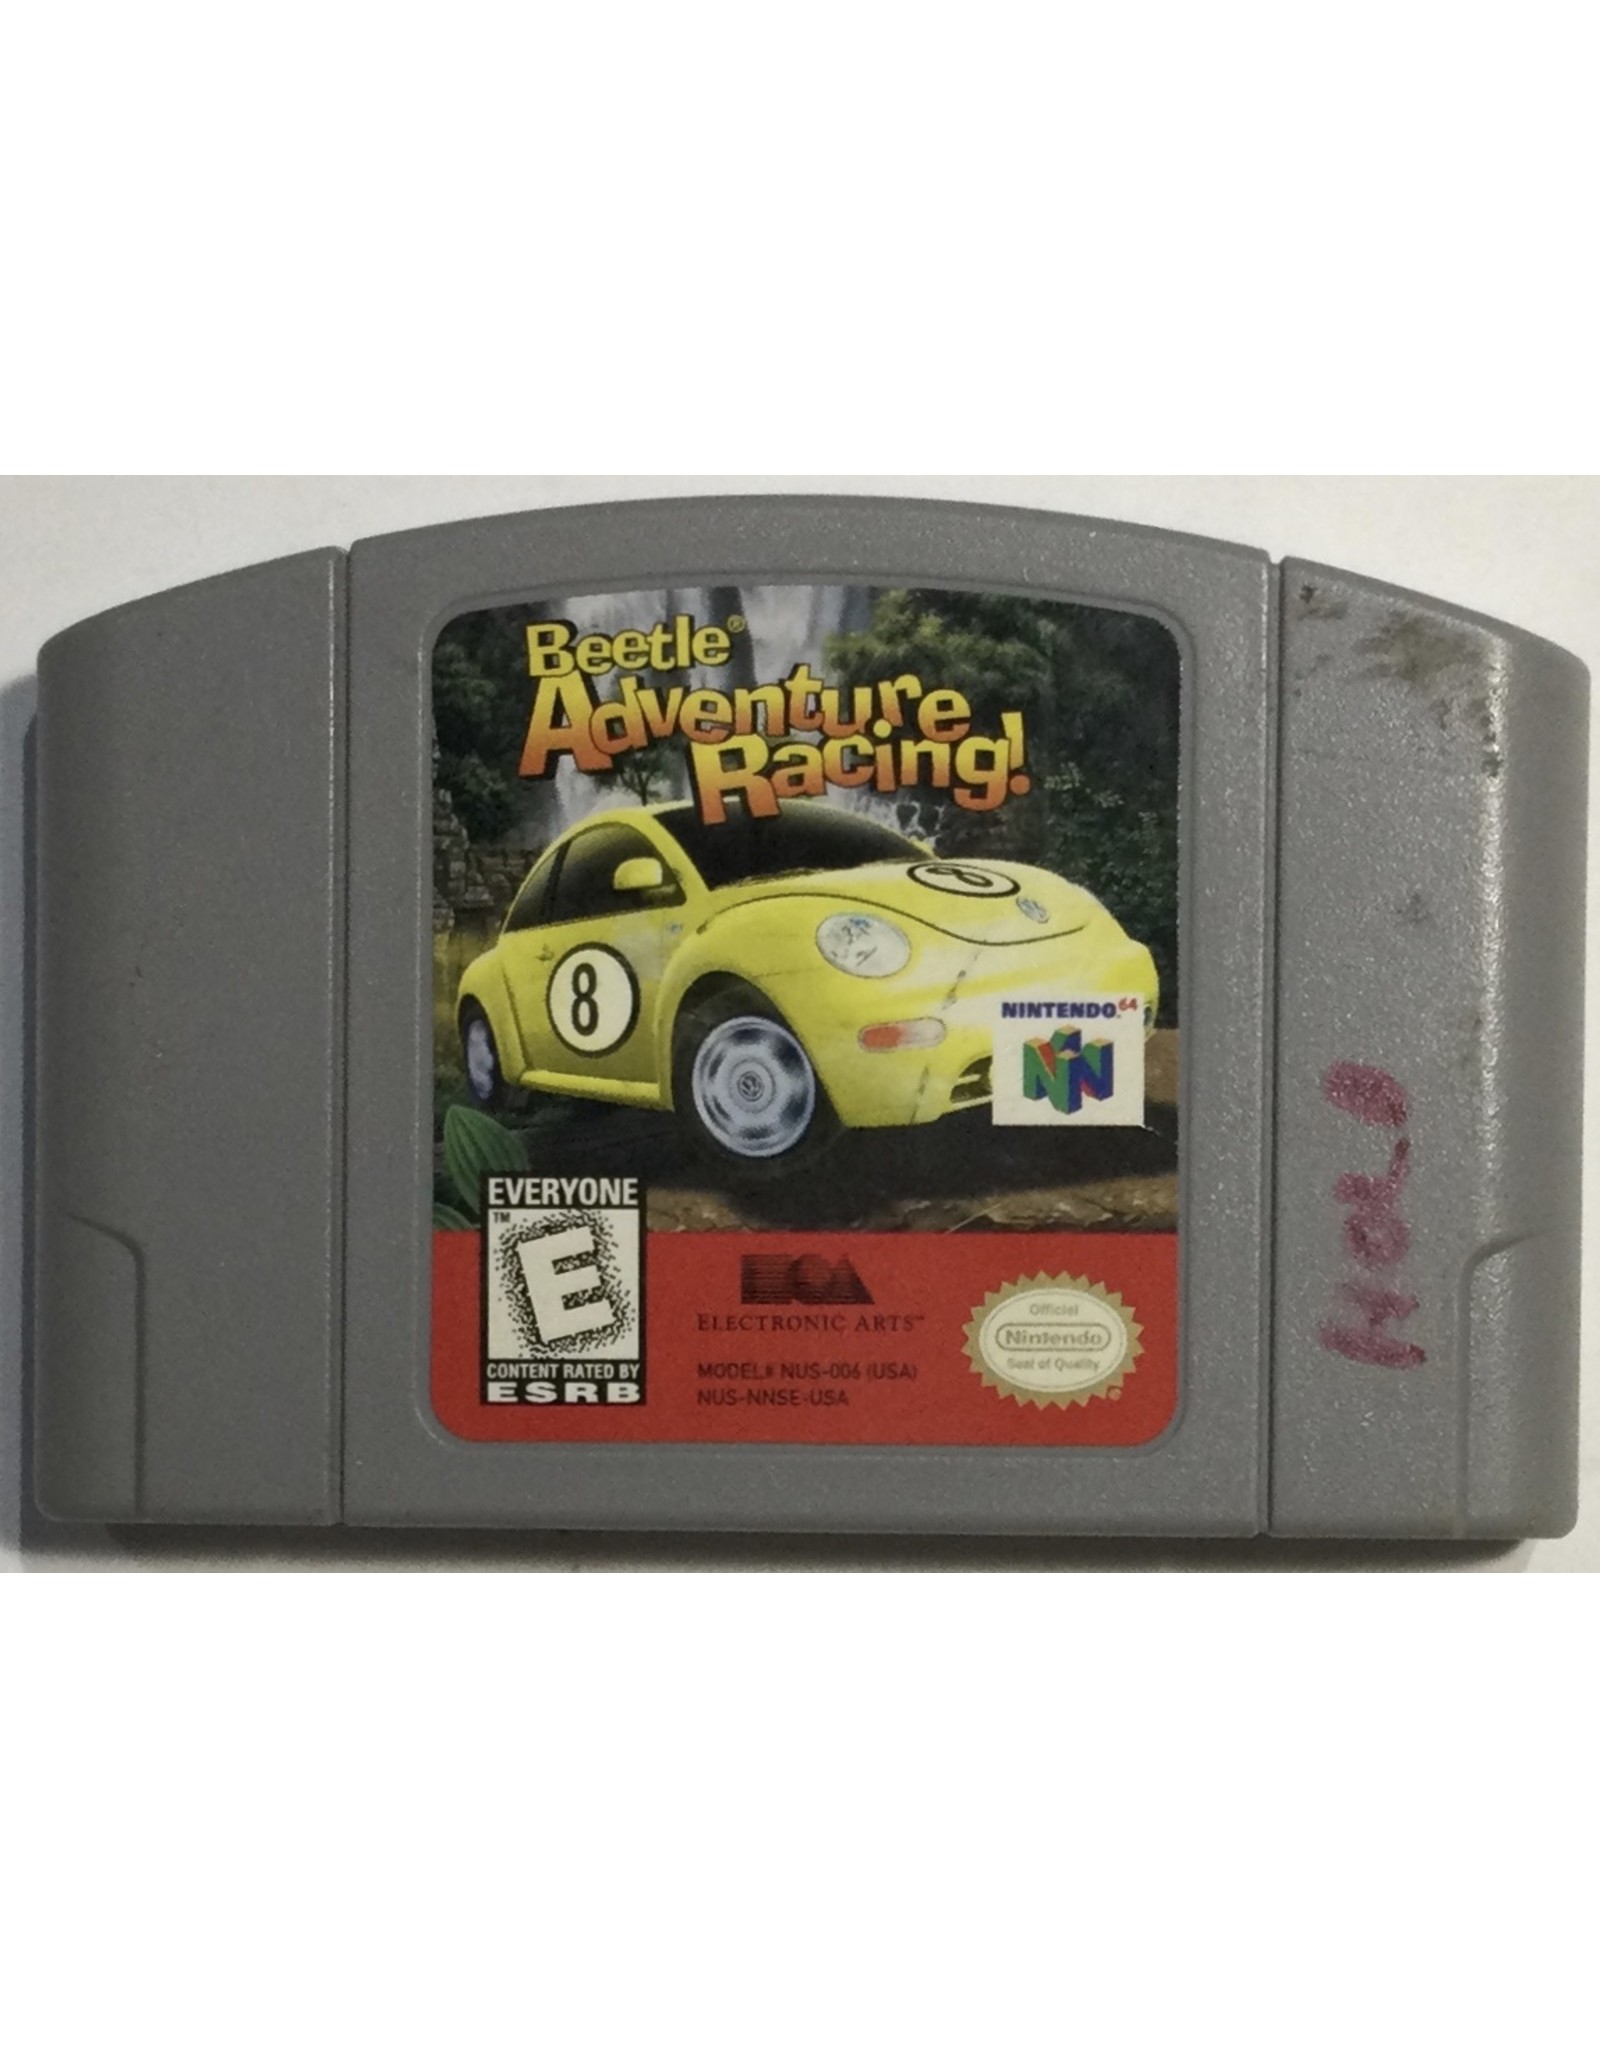 Electronic Arts Beetle Adventure Racing for Nintendo 64 (N64)